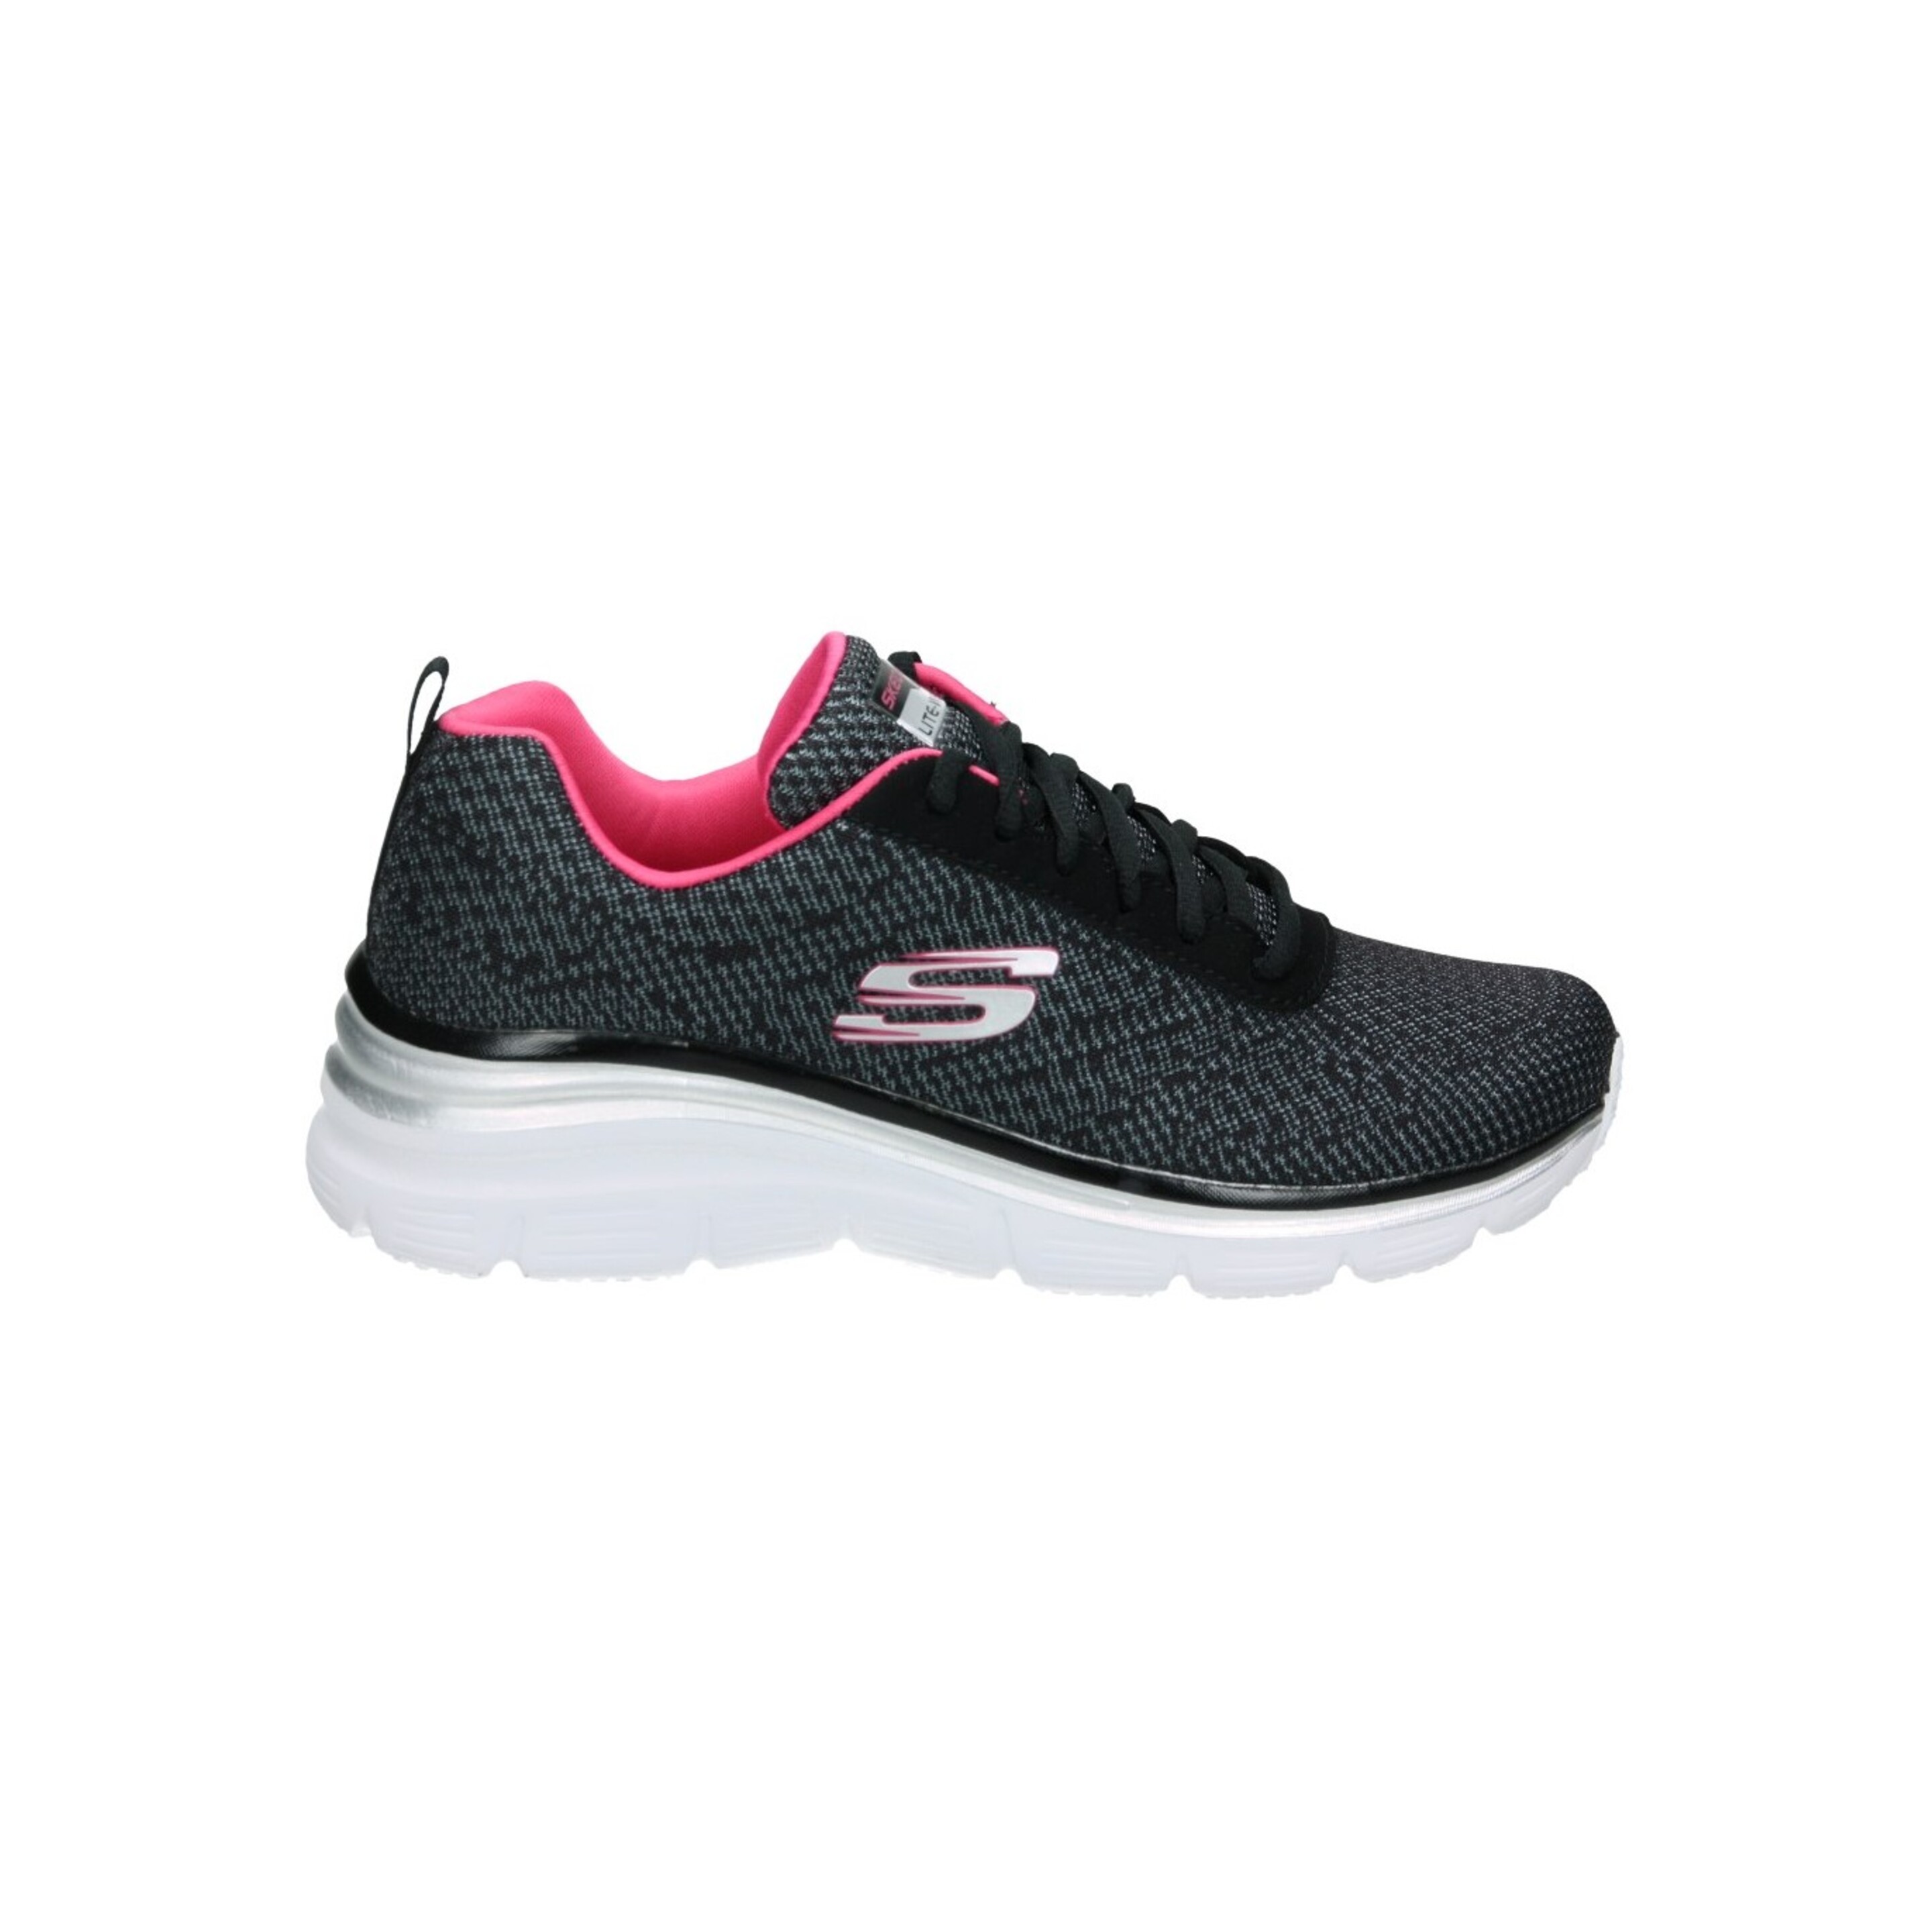 Zapatillas Skechers Fashion Fit - negro-rosa - 